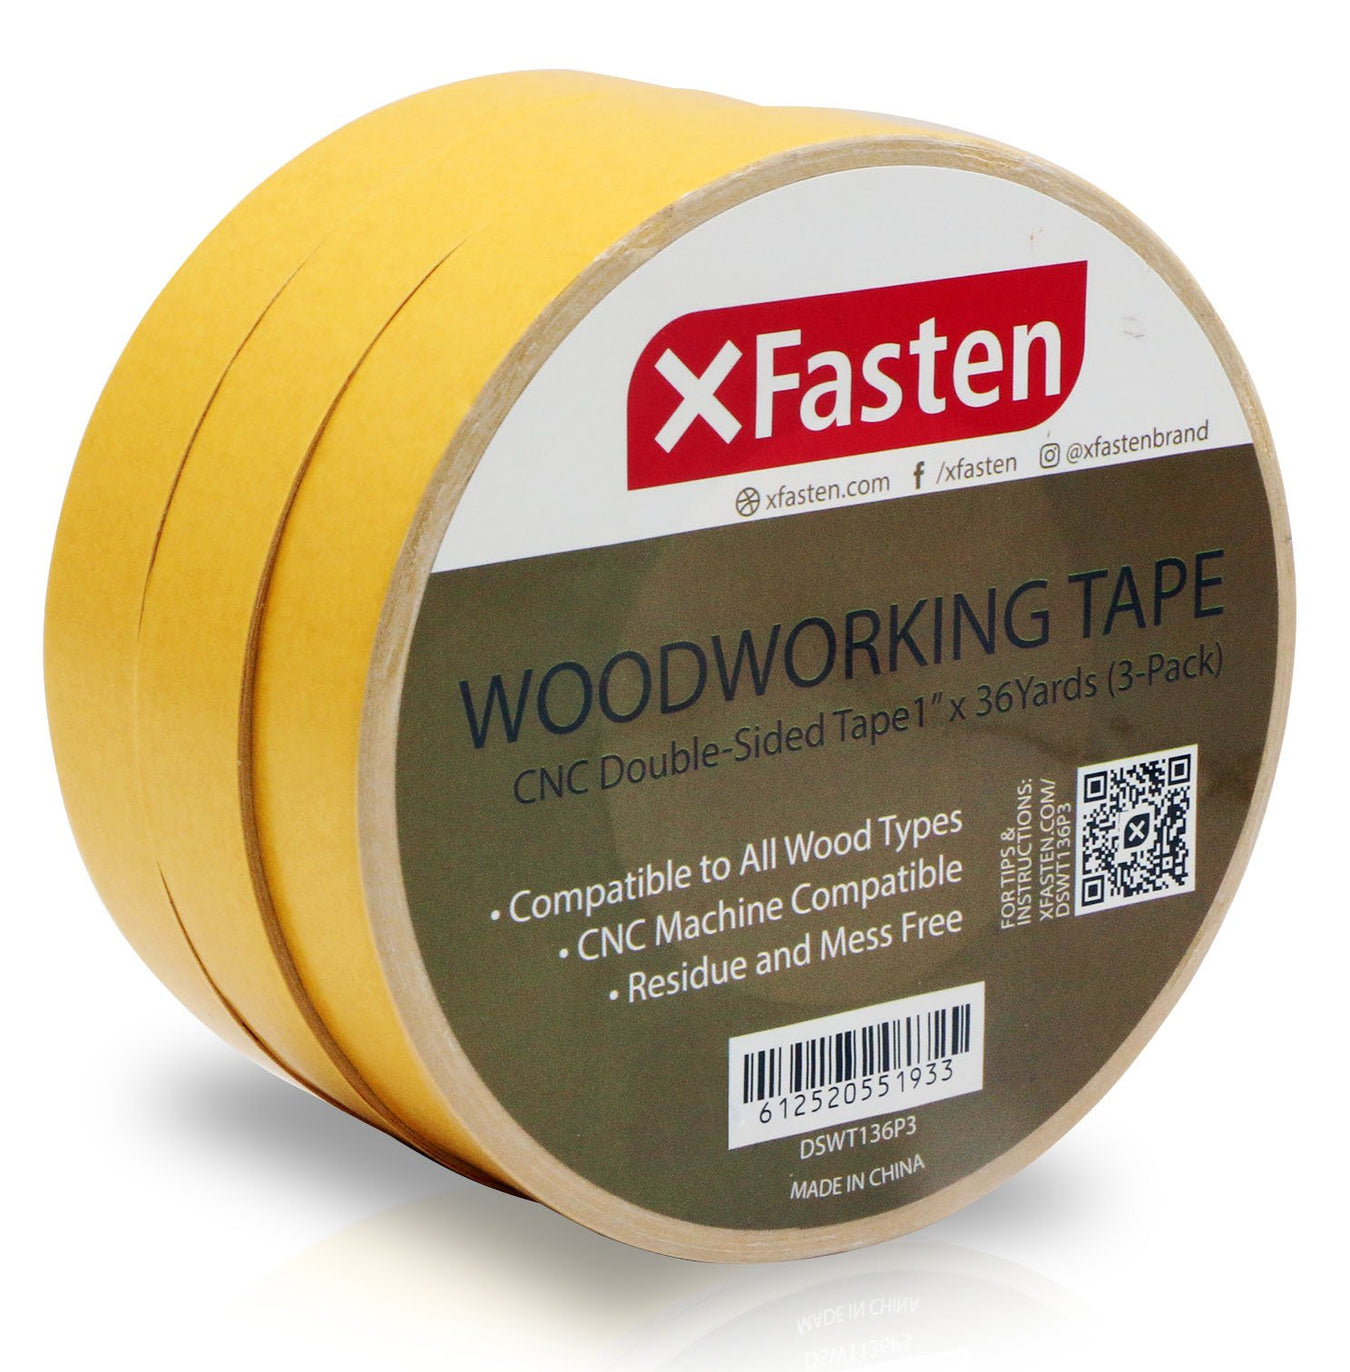 Woodworking Tape - XFasten